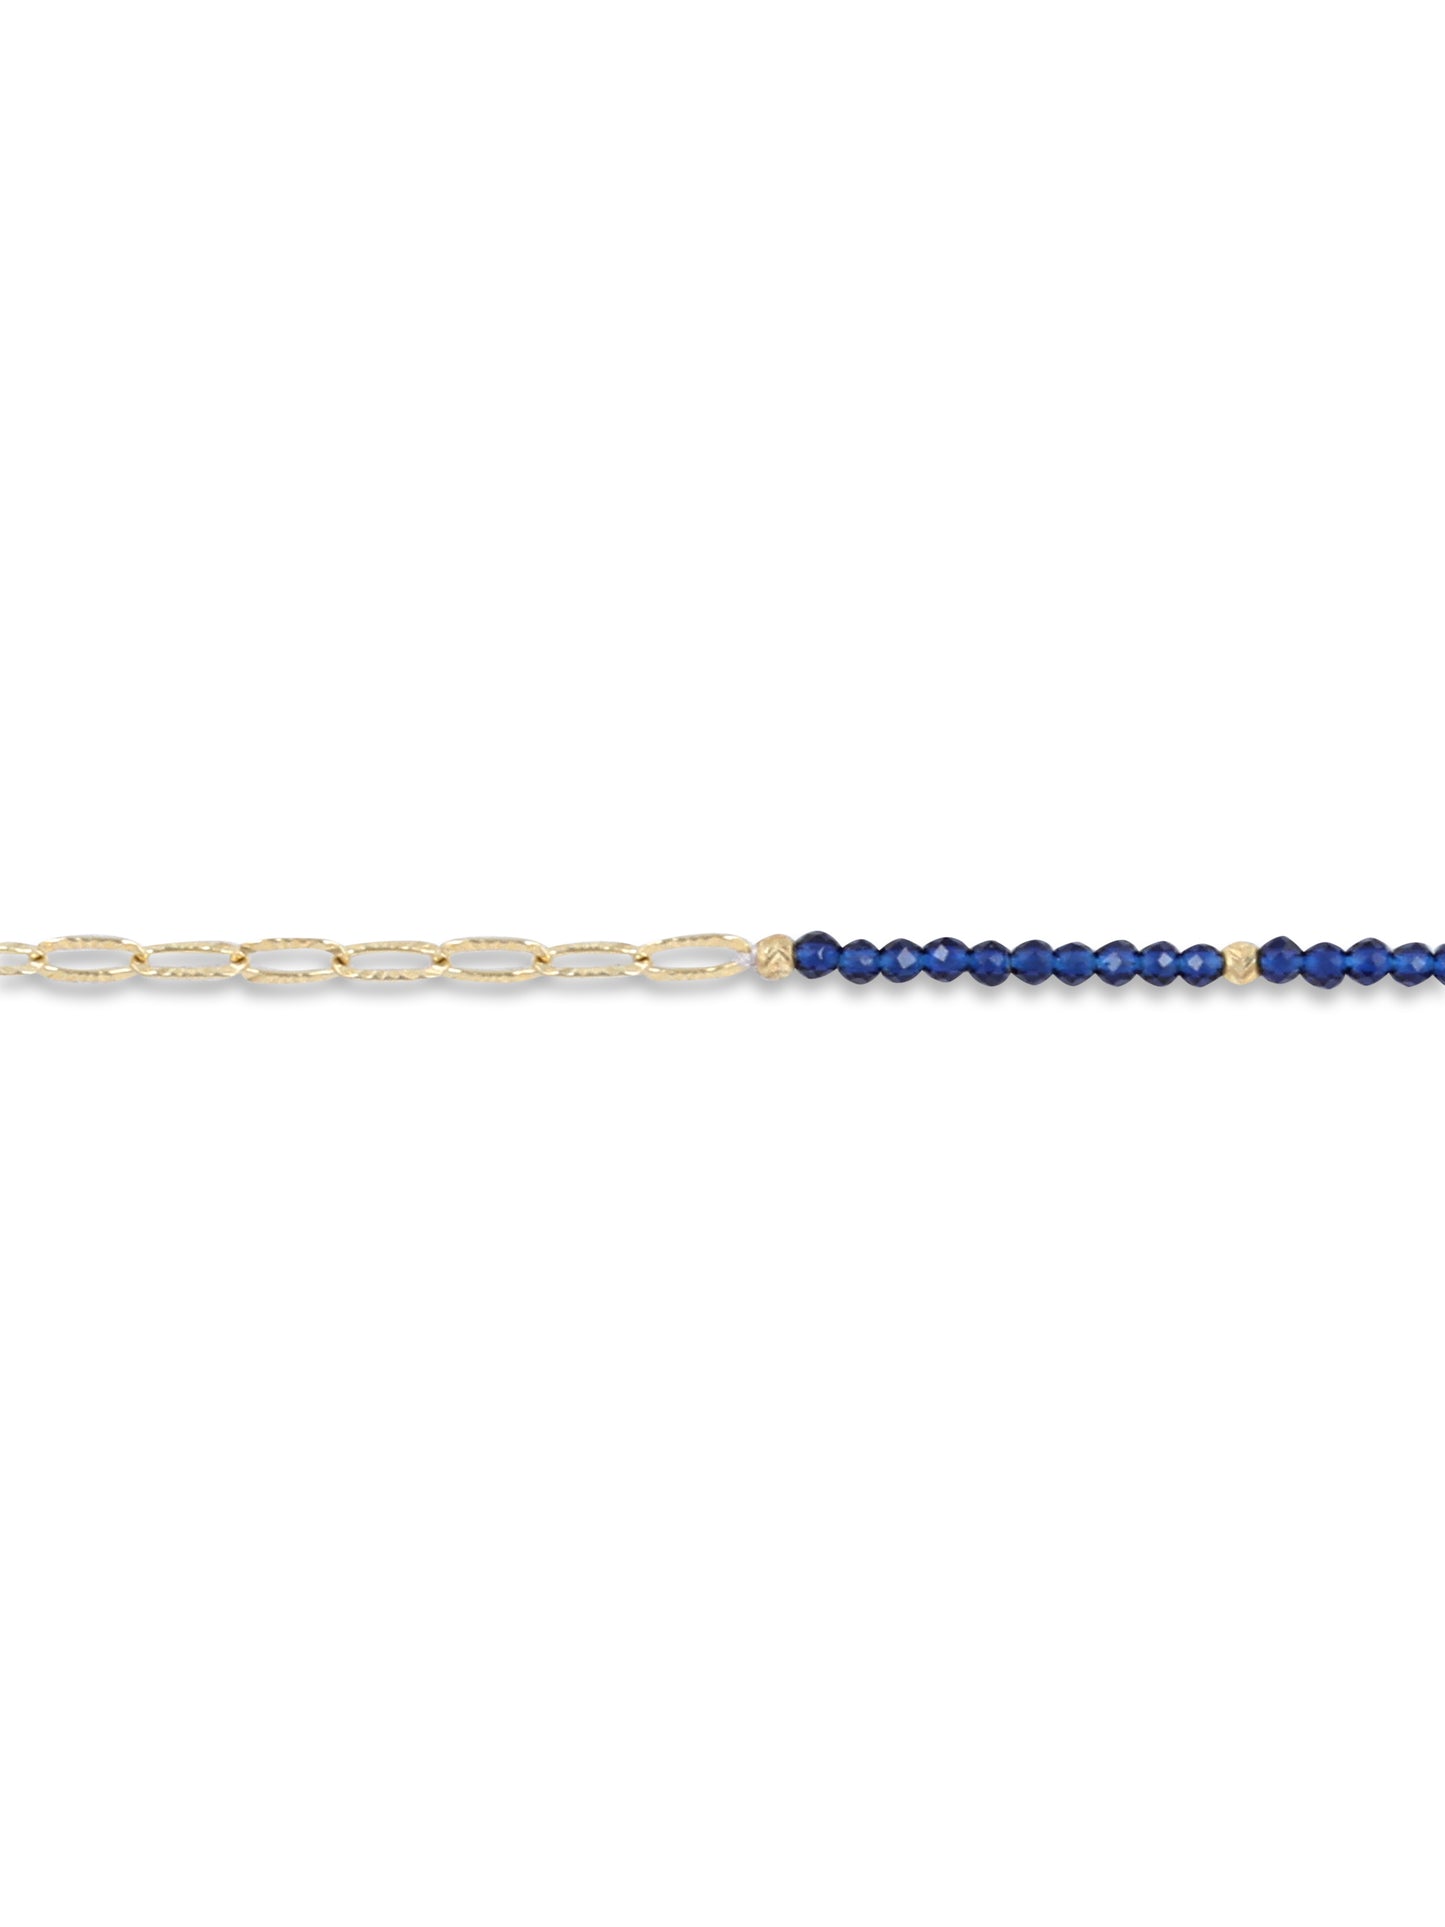 Blue designer bracelet